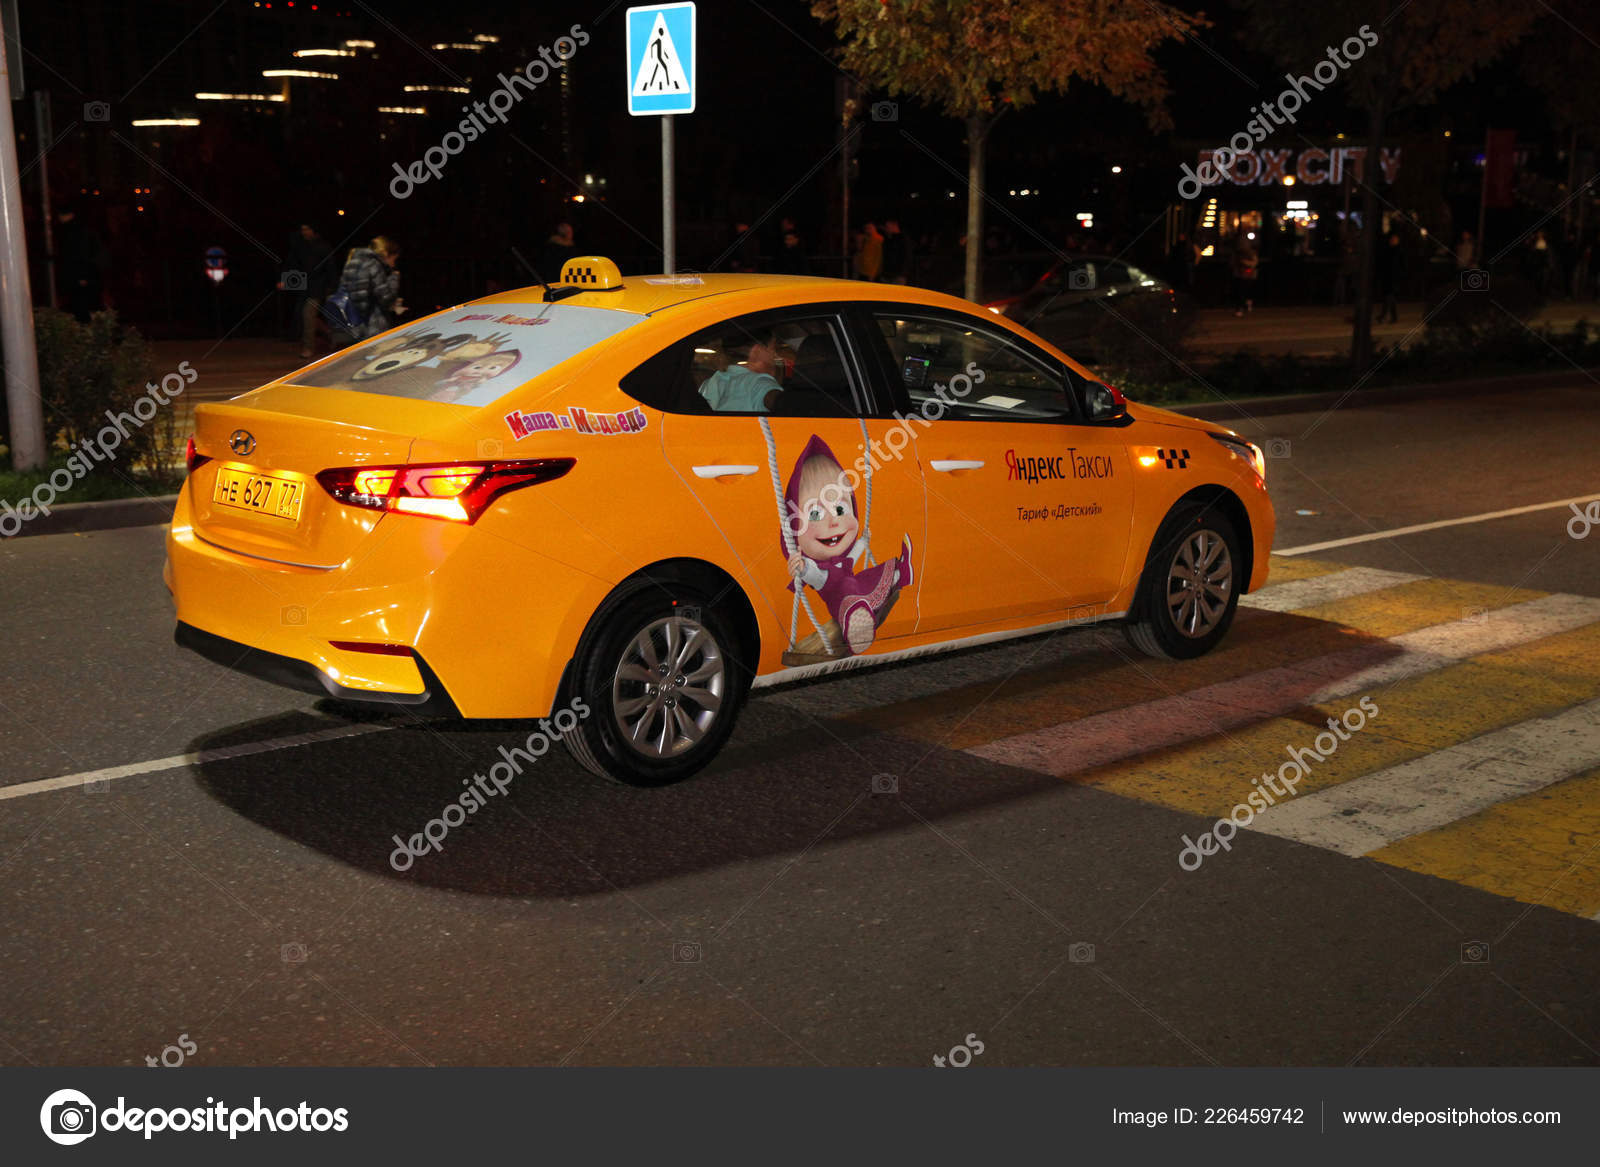 Яндекс Такси Фото